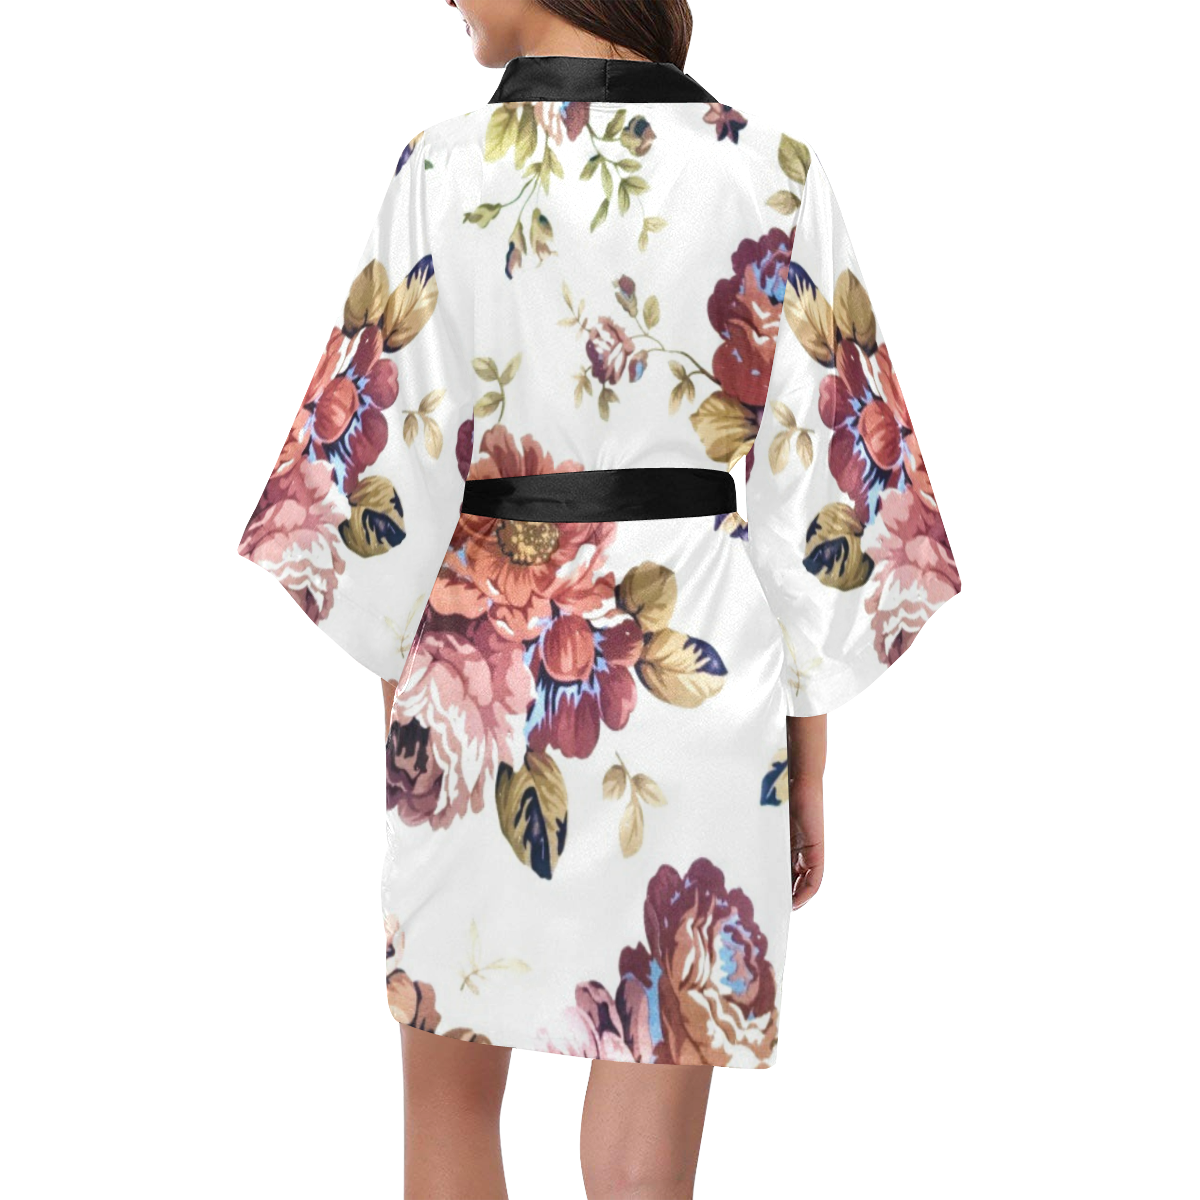 Roses Kimono Robe